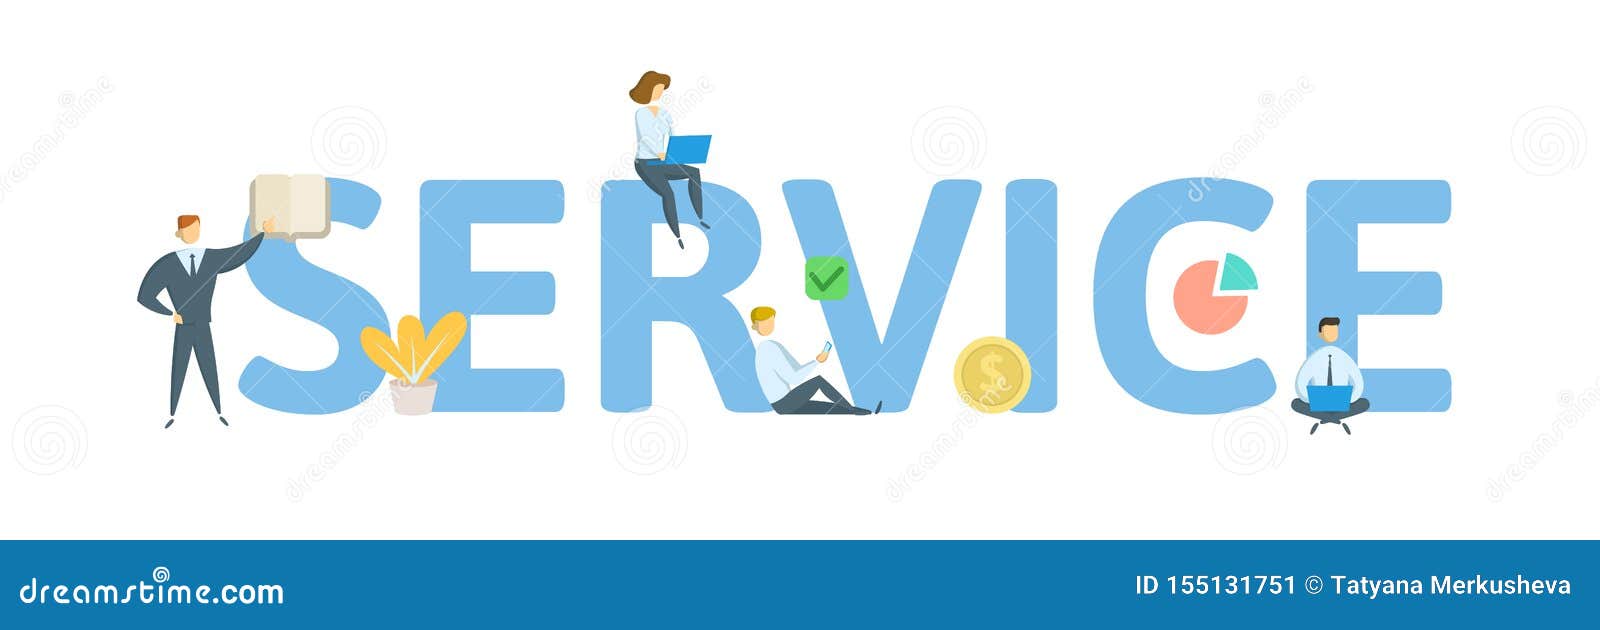 vectorize service